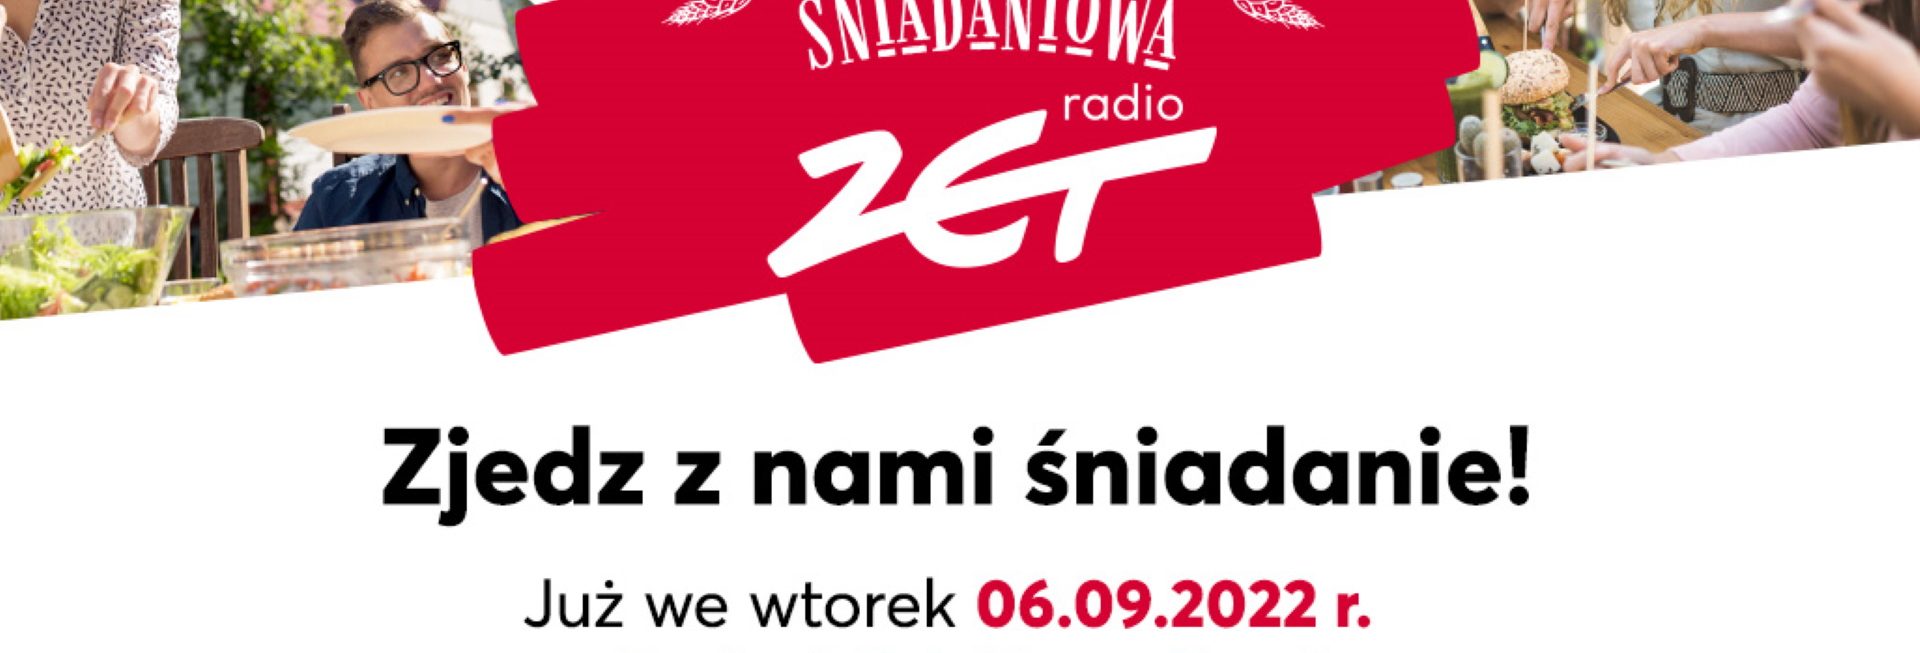 Plakat zapraszający do Iławy na Wielką Trasę Śniadaniową RADIA ZET Iława 2022.